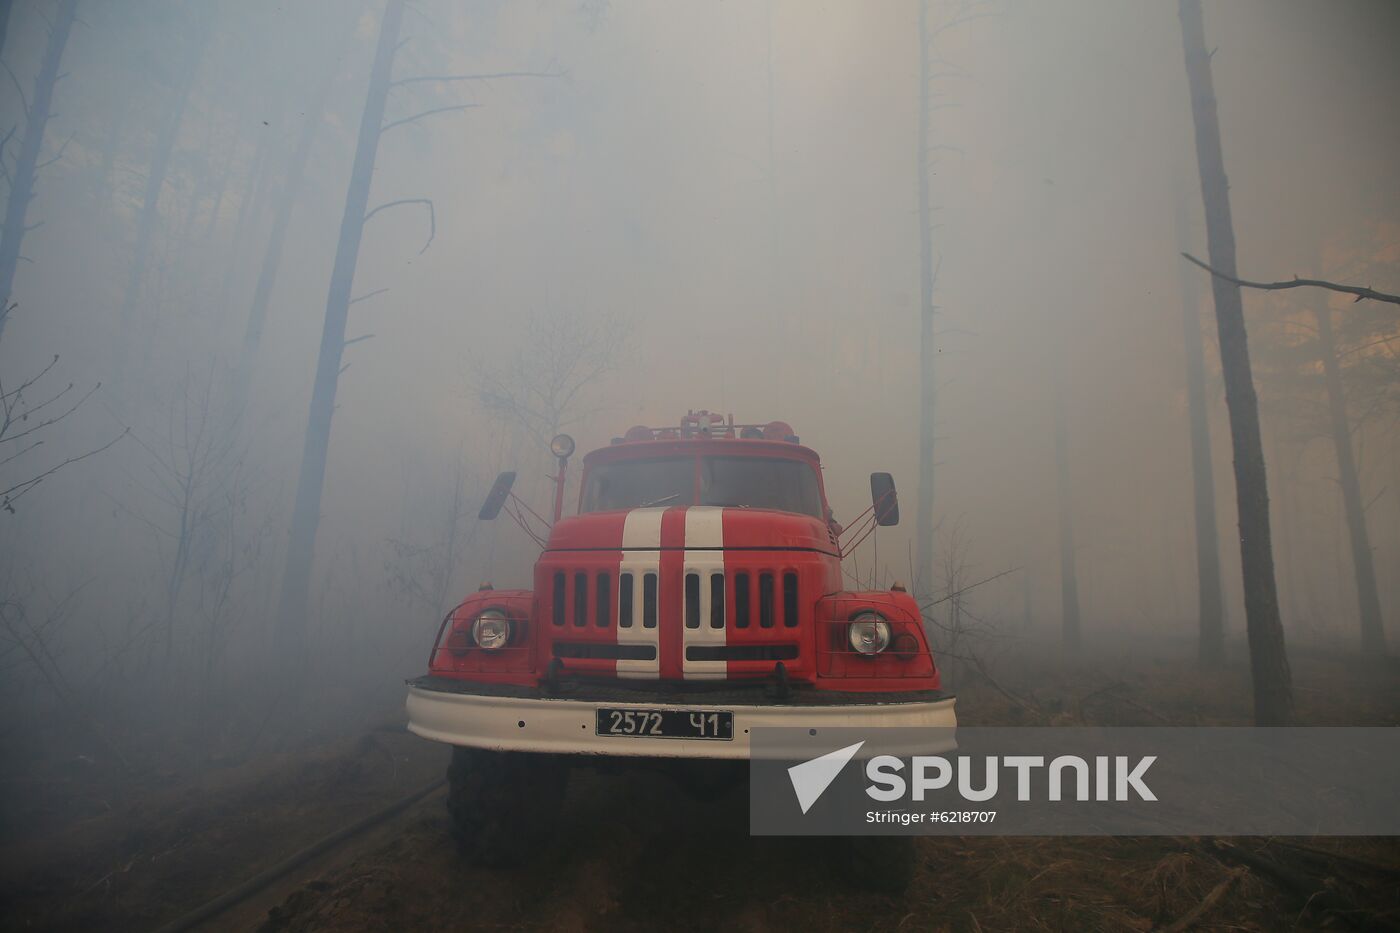 Ukraine Chernobyl Forest Fire